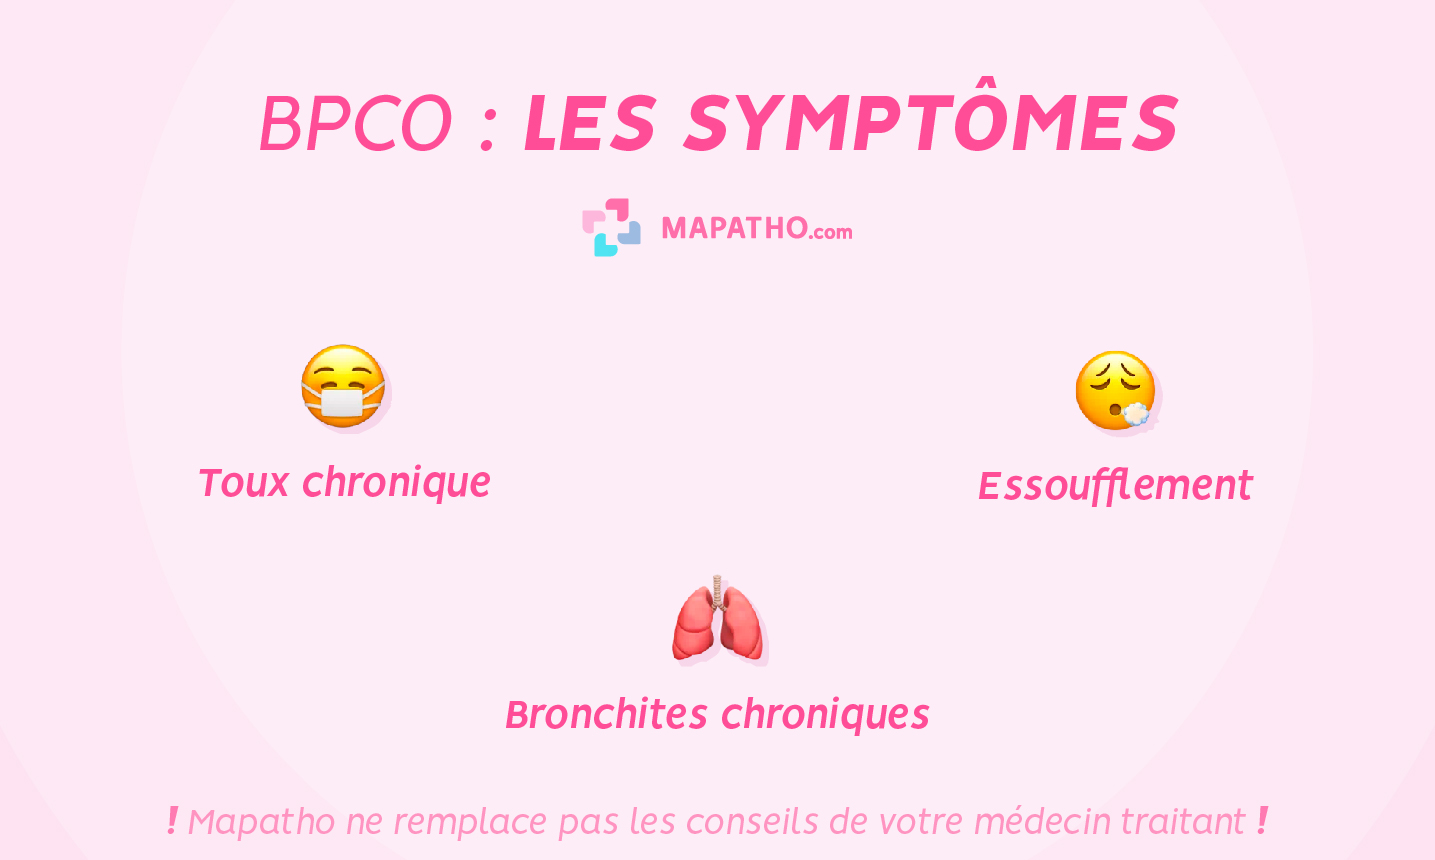 Les symptômes de la BPCO bronchopneumopathie chronique obstructive